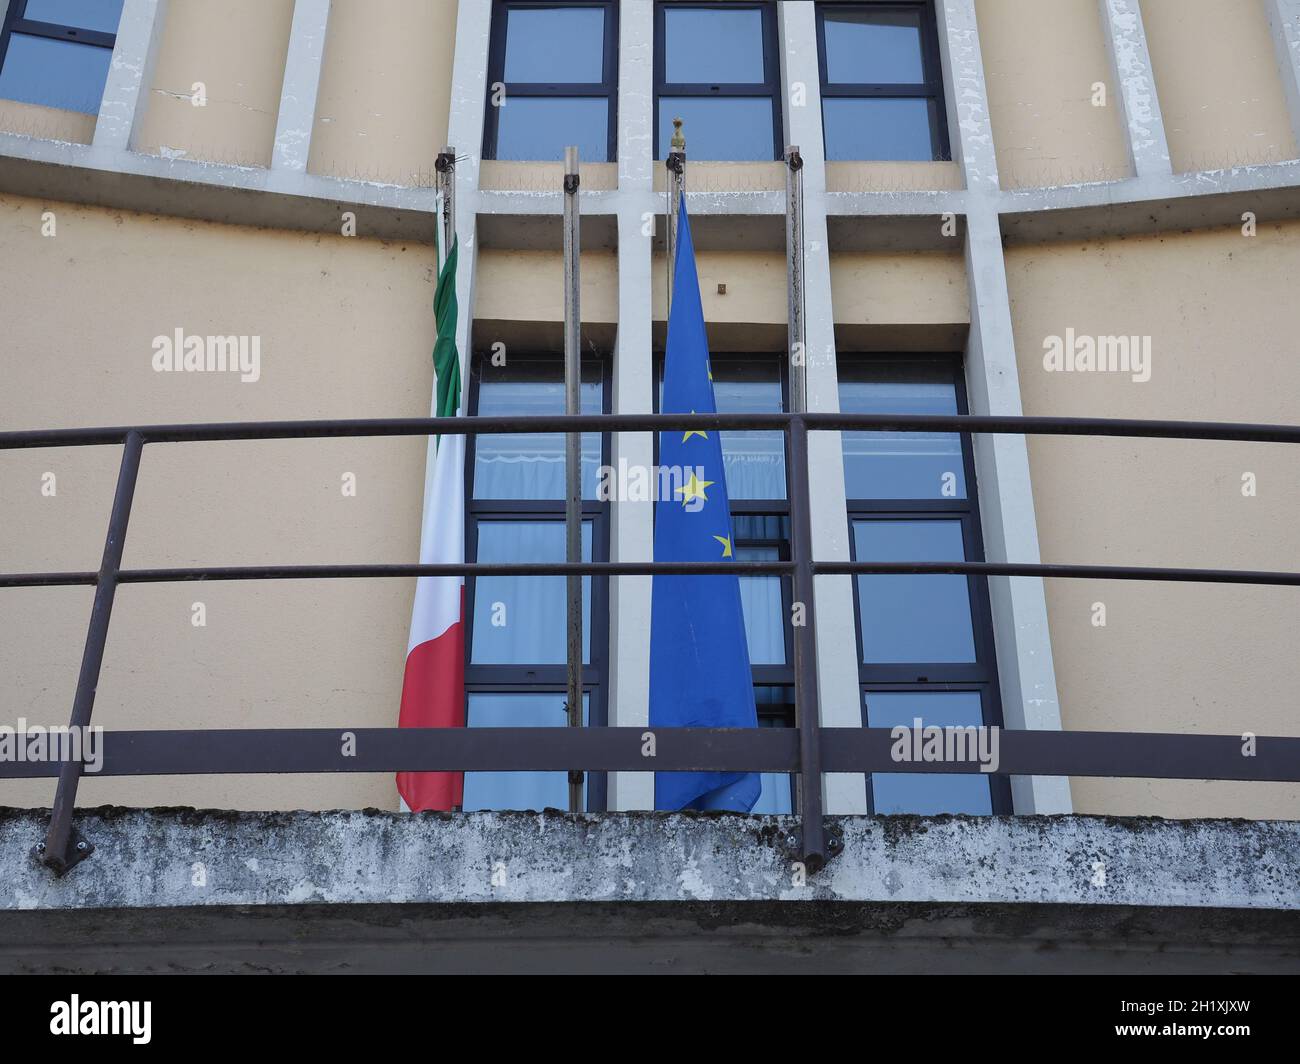 SAN MAURO, ITALIA - CIRCA LUGLIO 2021: Scuola elementare Nino Costa Foto Stock